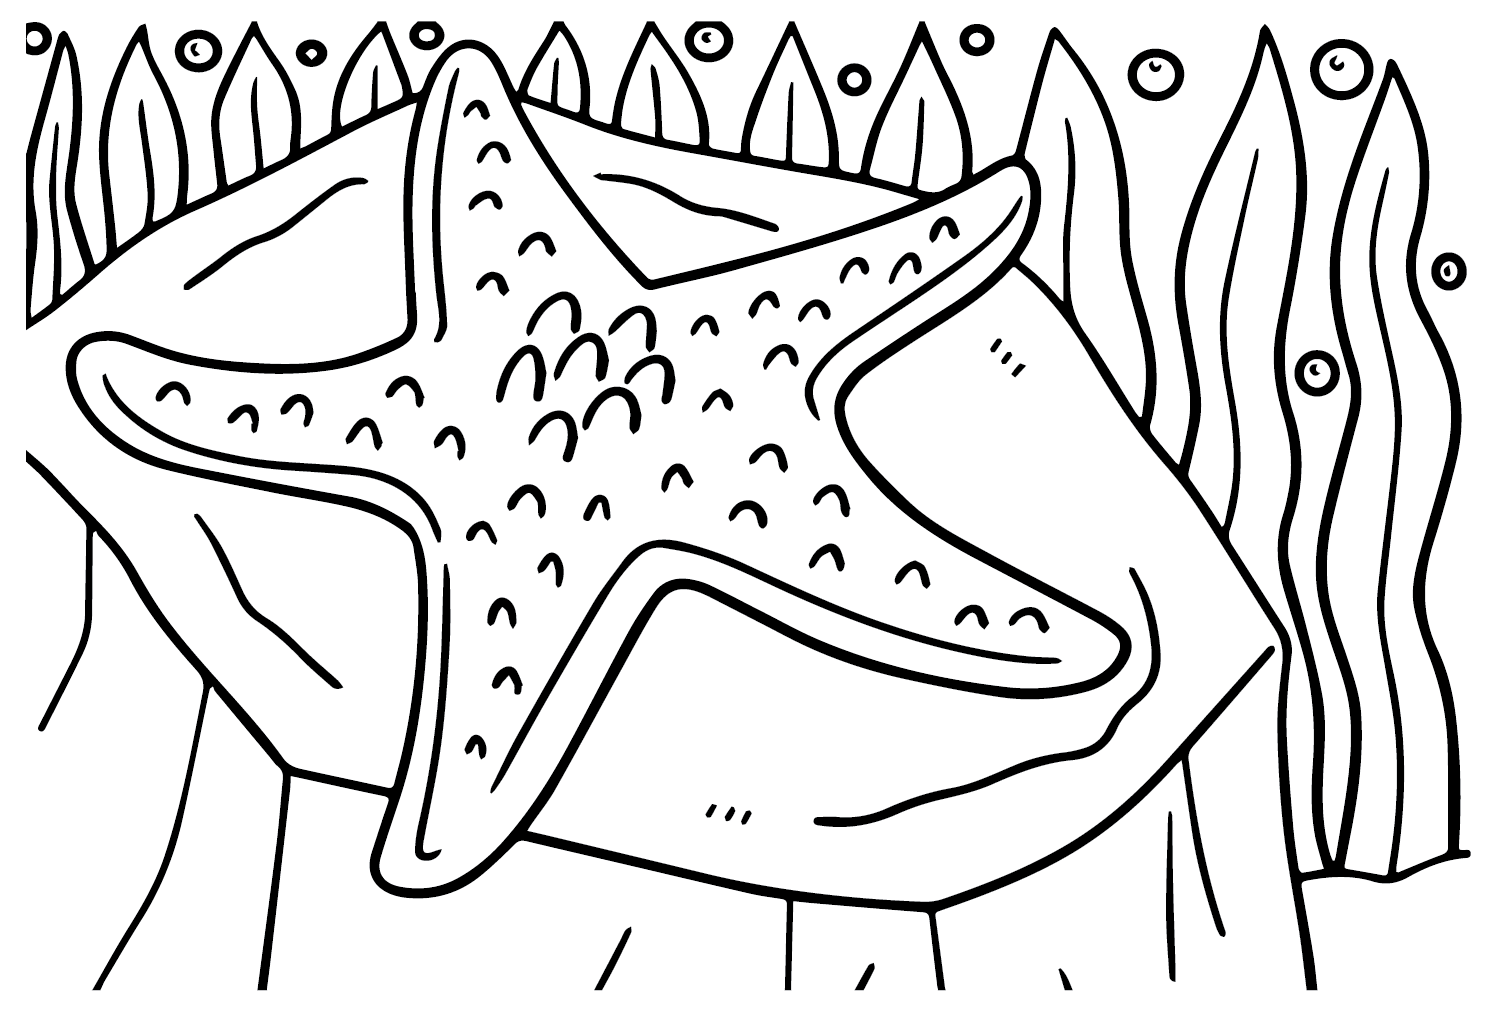 Dibujar estrella de mar a partir de estrella de mar